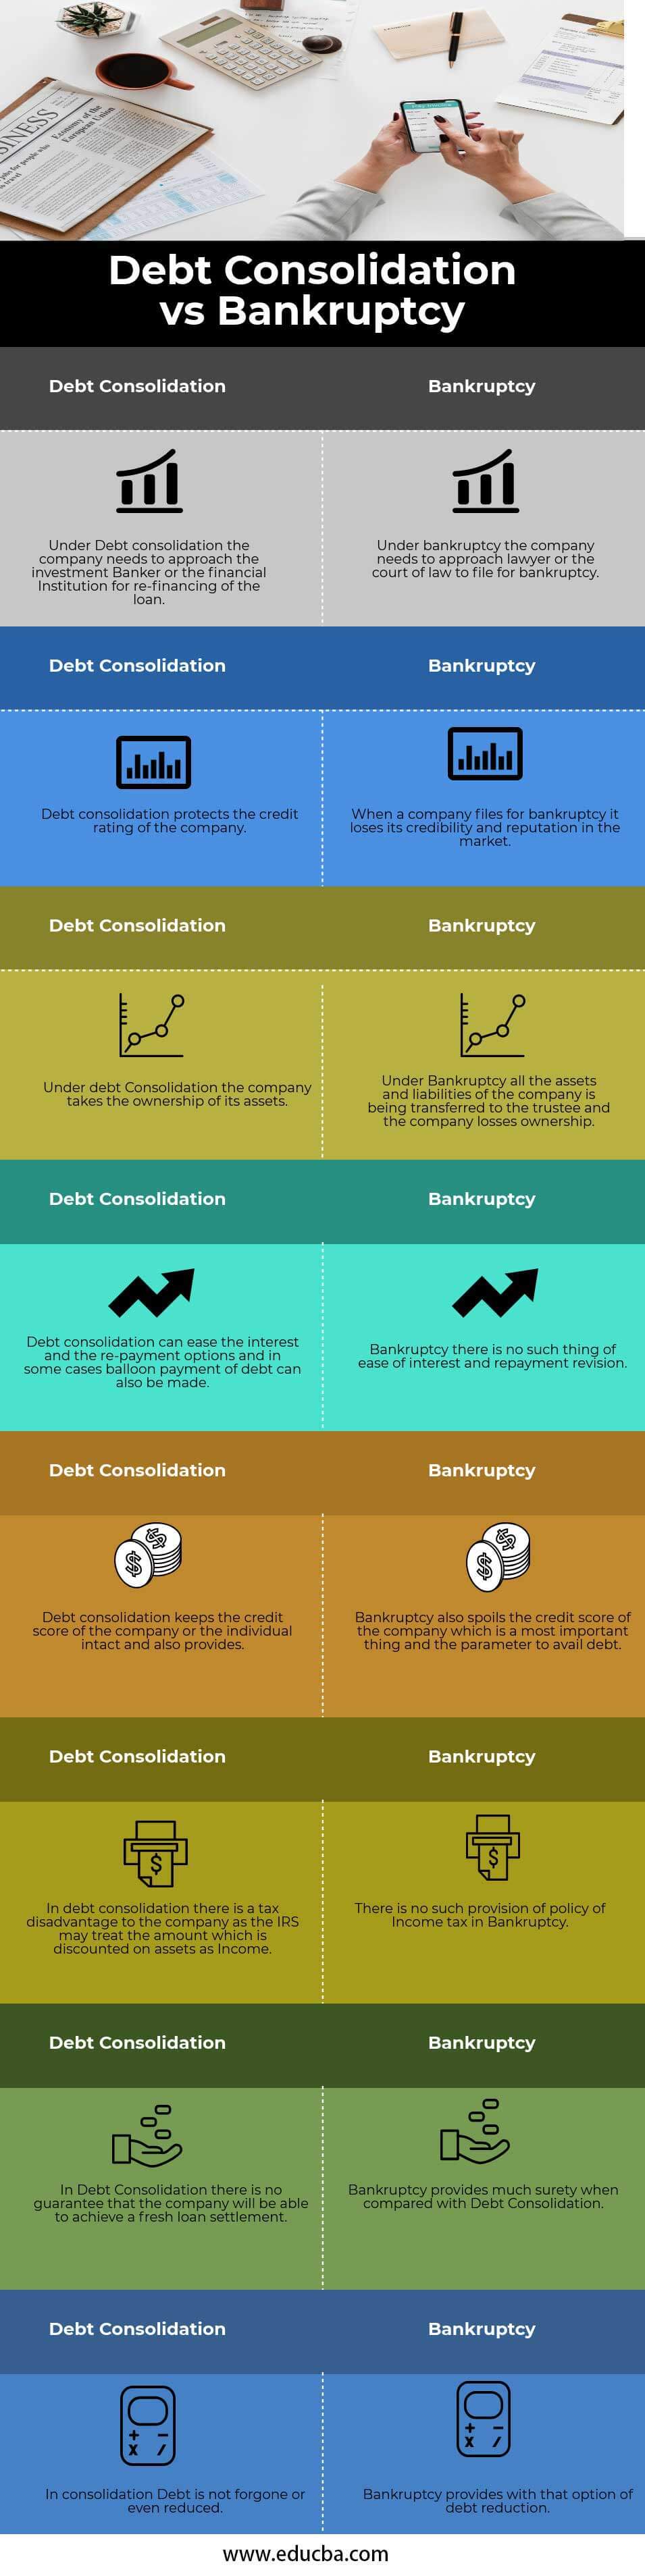 Consolidación de deuda versus quiebra